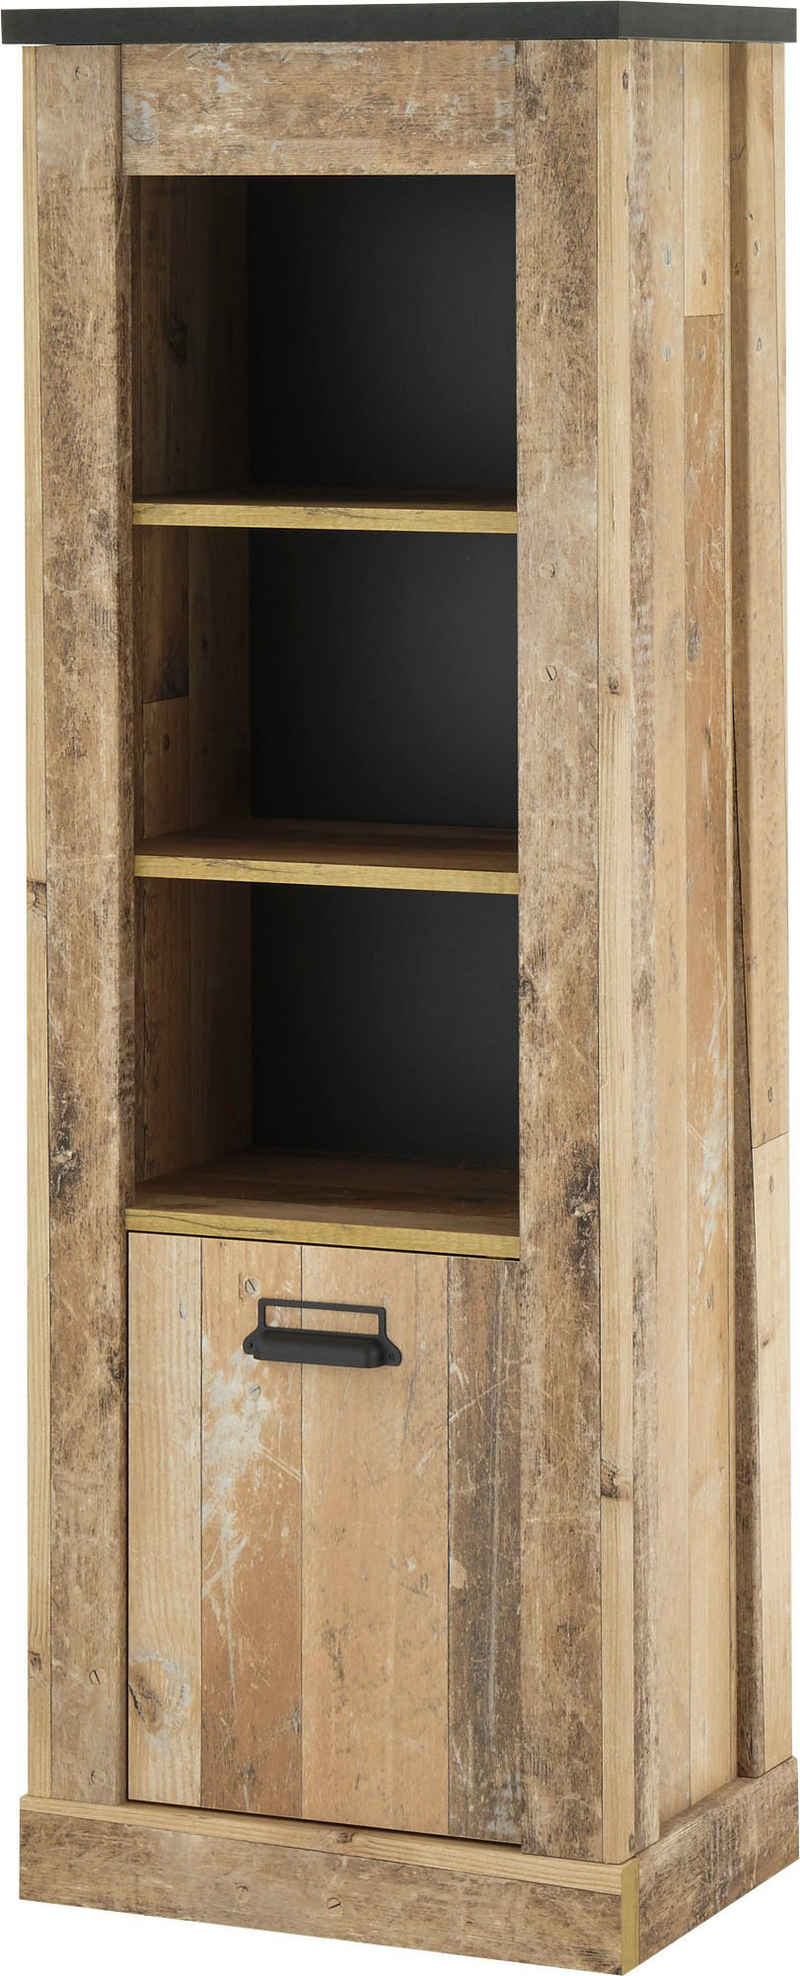 Premium collection by Home affaire Midischrank »SHERWOOD« in modernem Holz Dekor, mit Apothekergriffen aus Metall, Höhe 146 cm